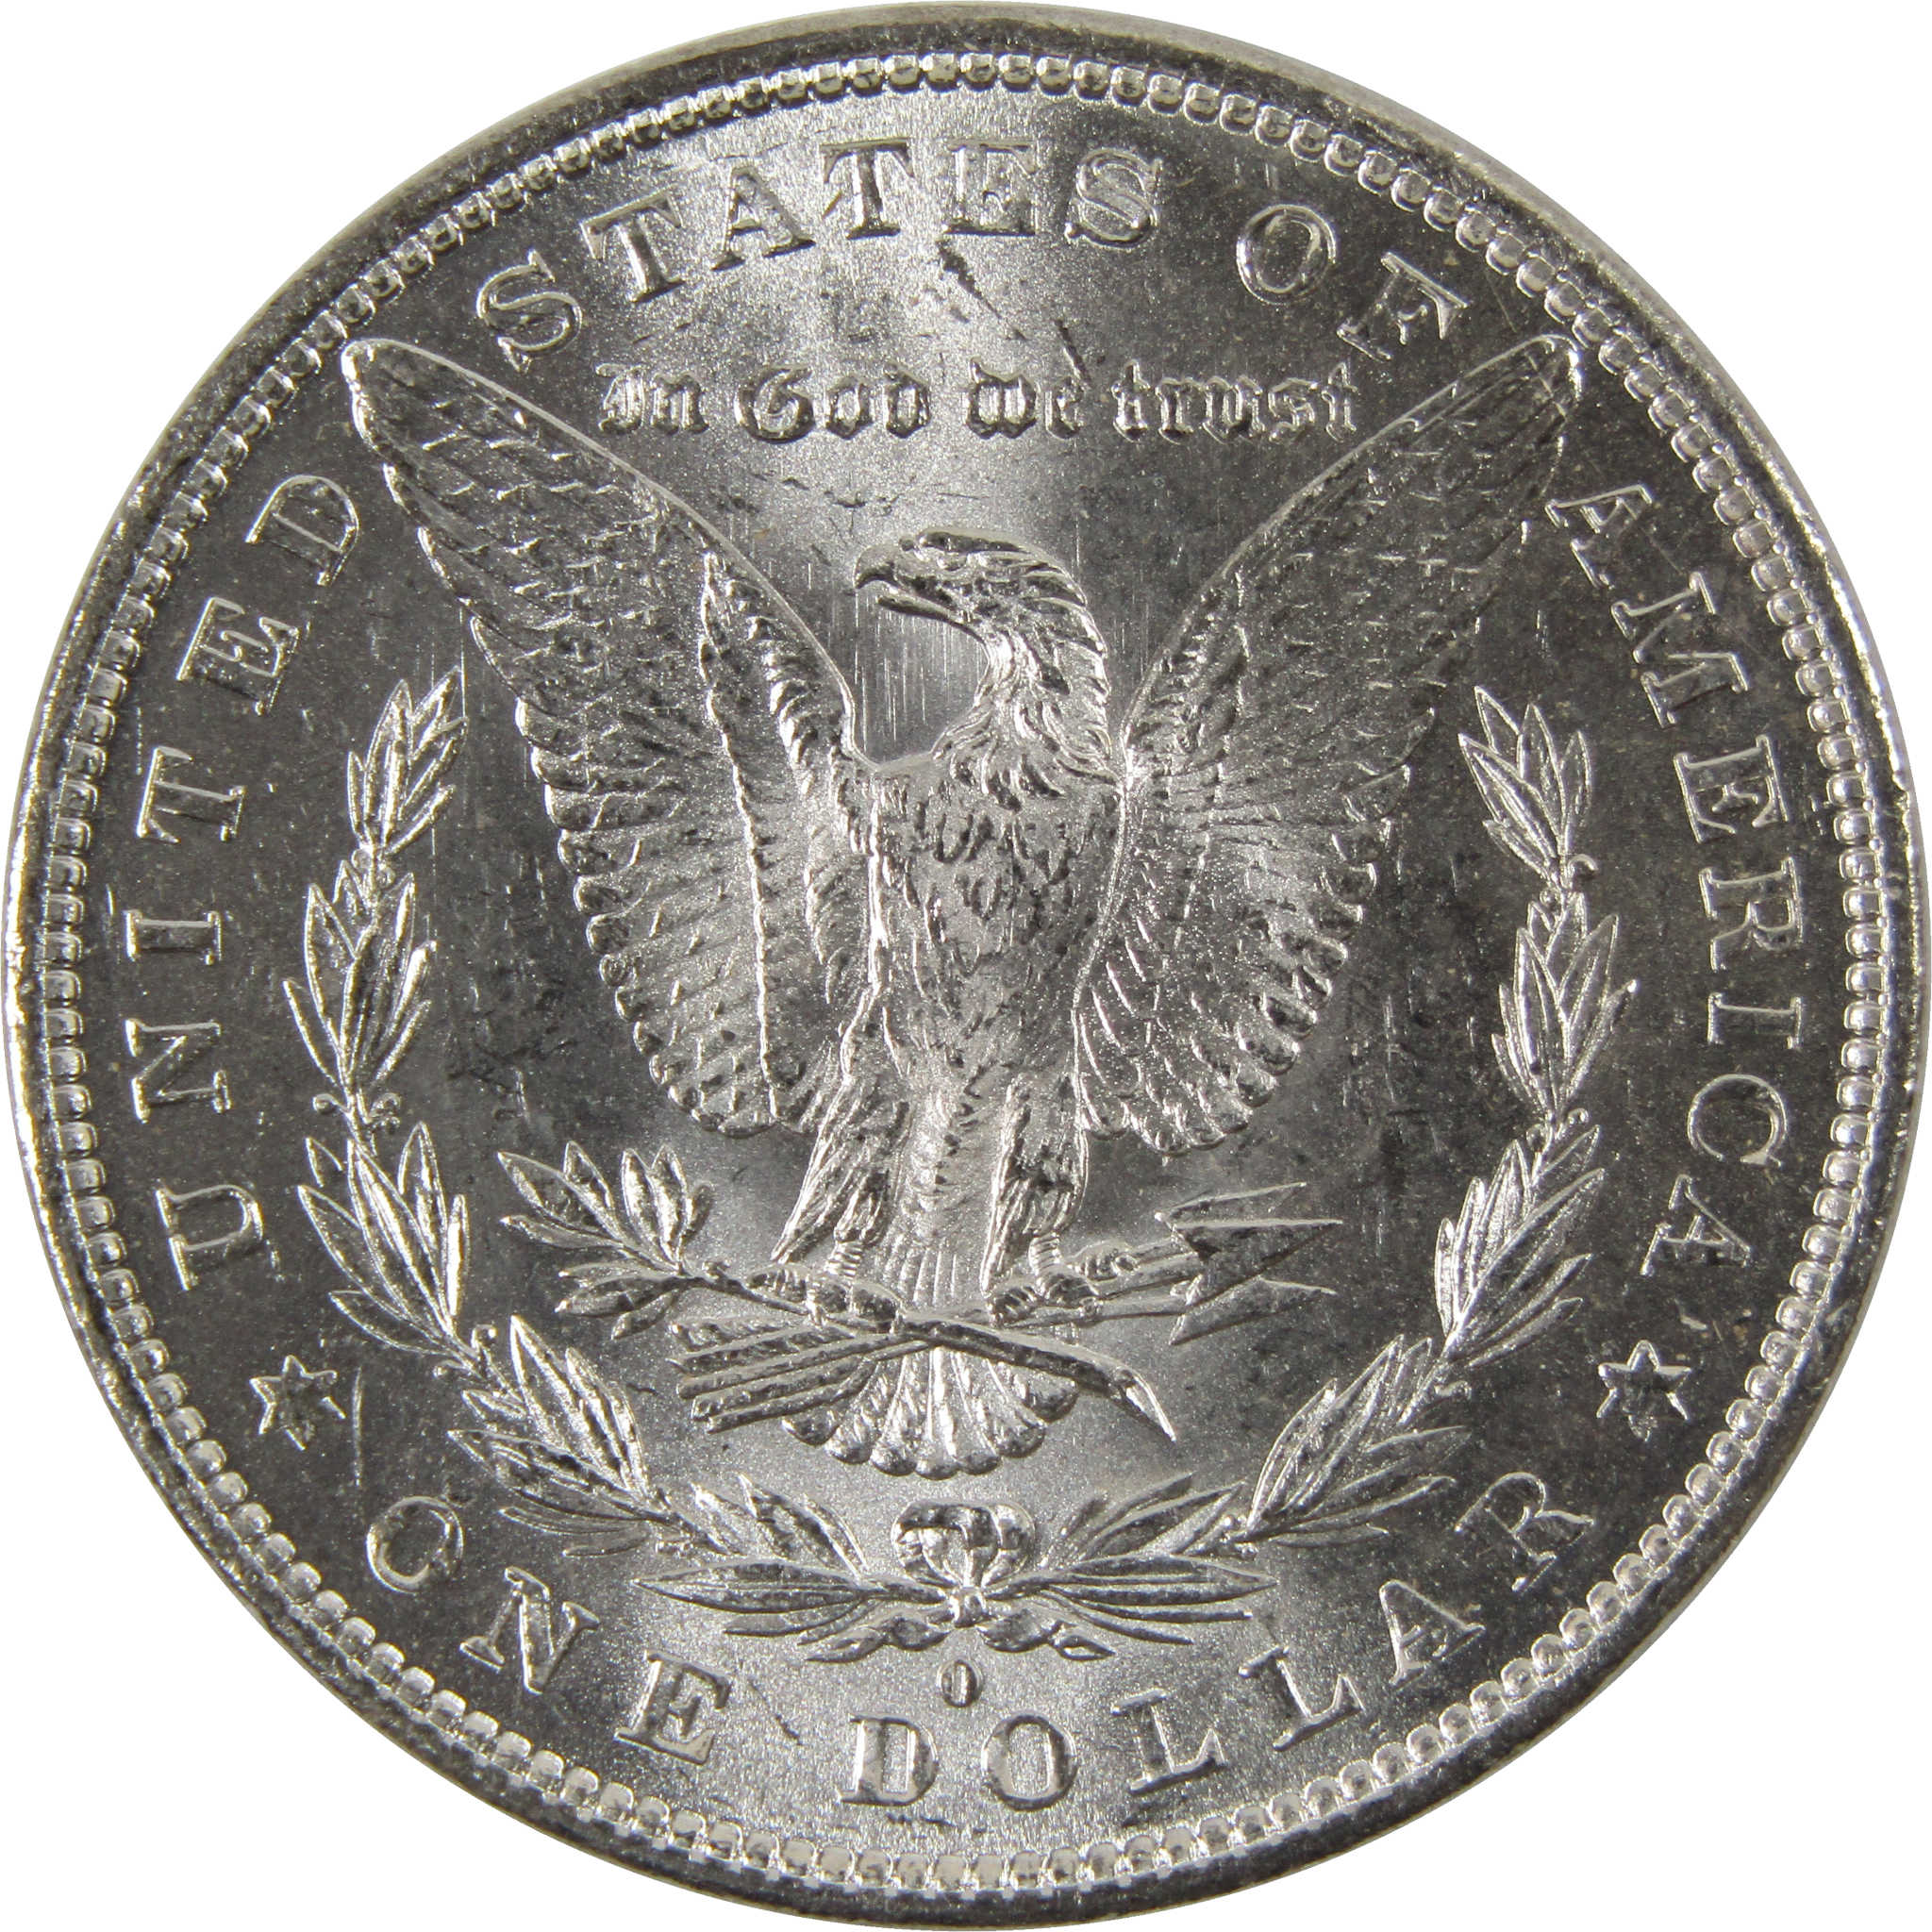 1881 O Morgan Dollar BU Uncirculated 90% Silver $1 Coin SKU:I8482 - Morgan coin - Morgan silver dollar - Morgan silver dollar for sale - Profile Coins &amp; Collectibles